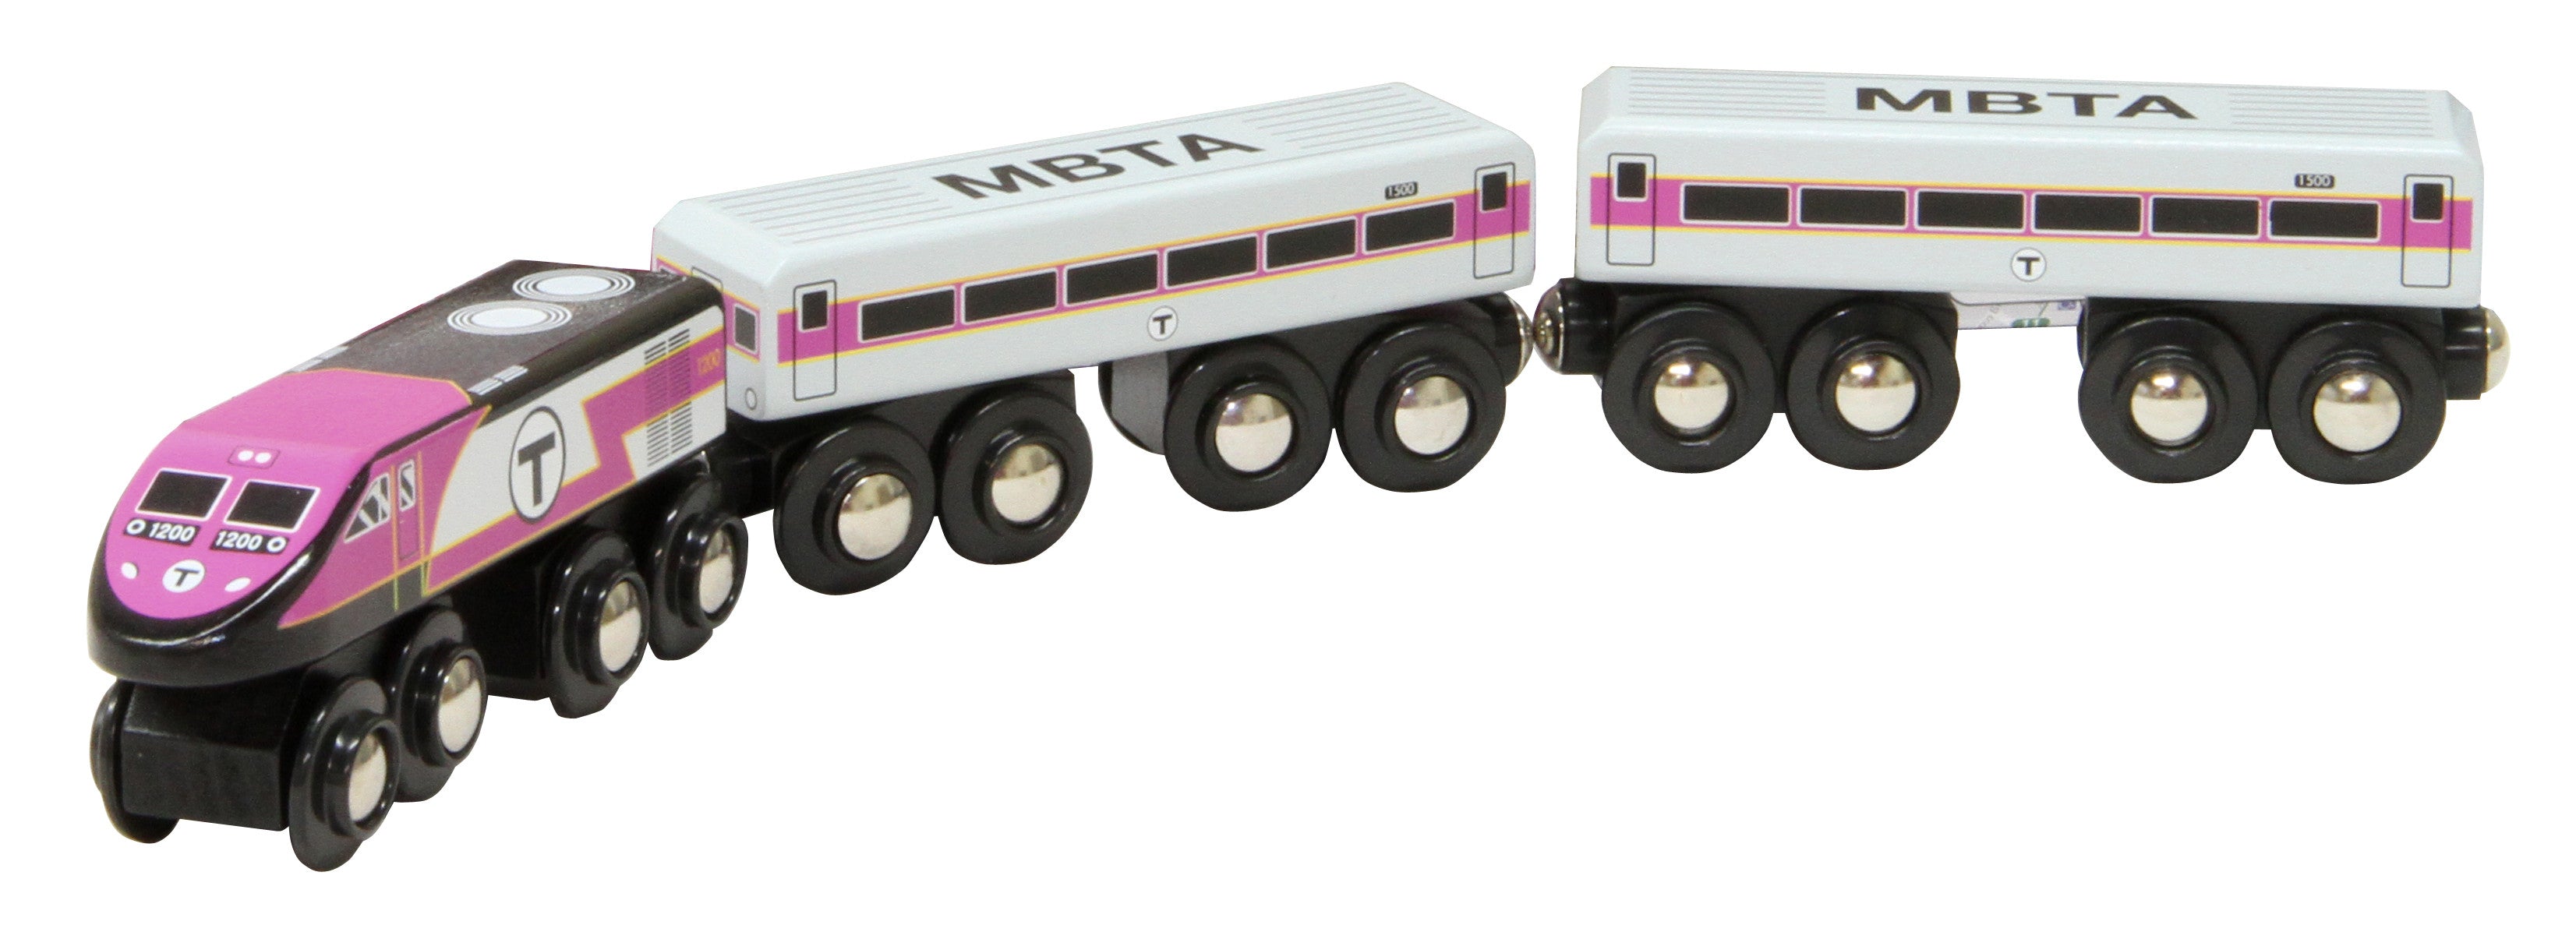 MBTA Commuter Rail Wooden Toy Train – MBTAgifts